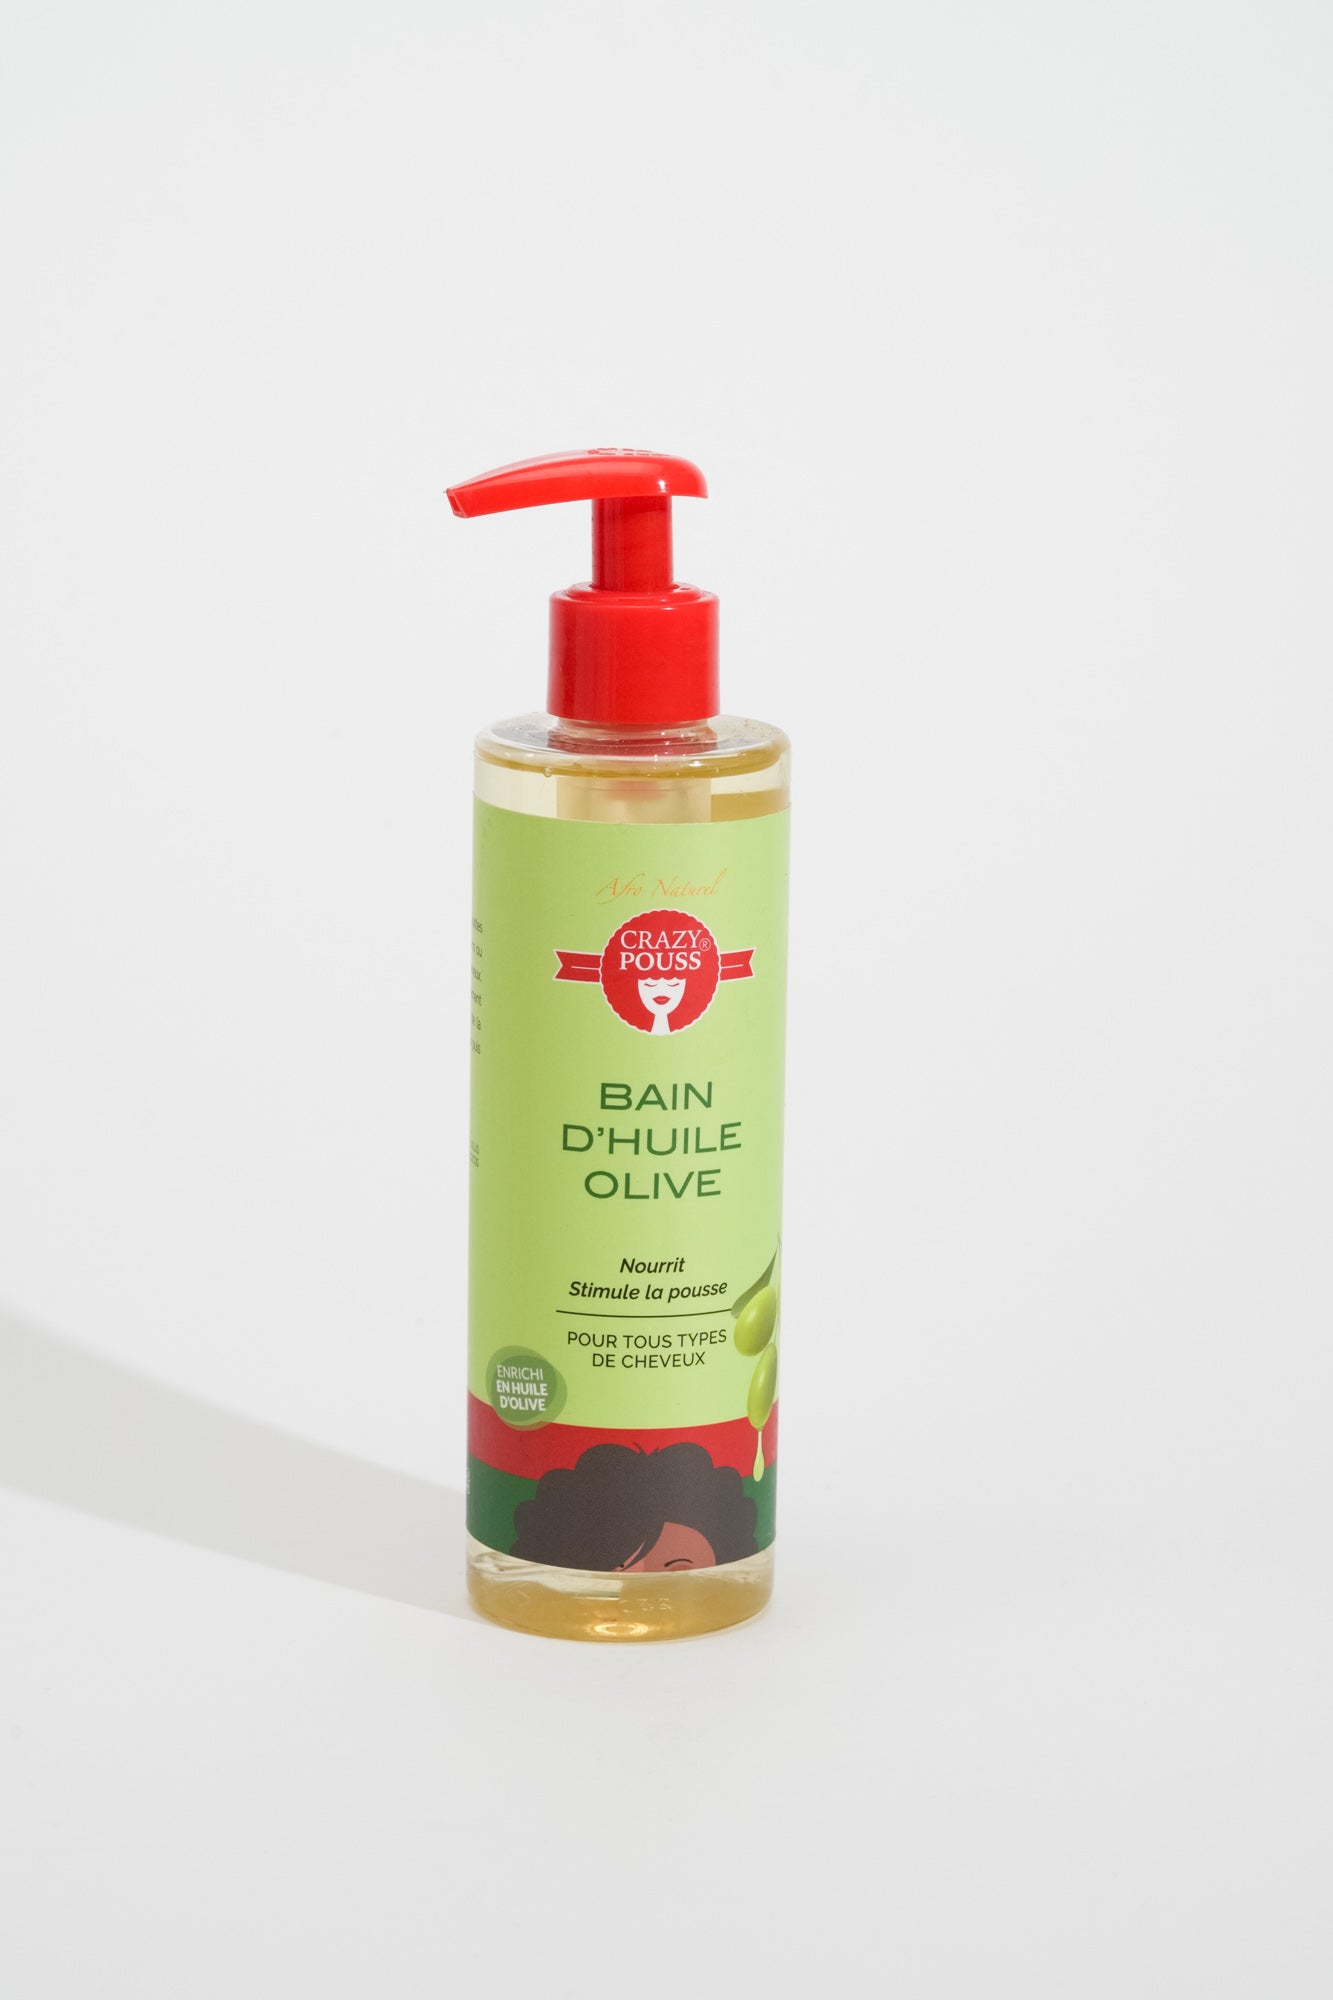 CRAZY POUSS - Bain d'huile olive pour prendre soin de vos cheveux